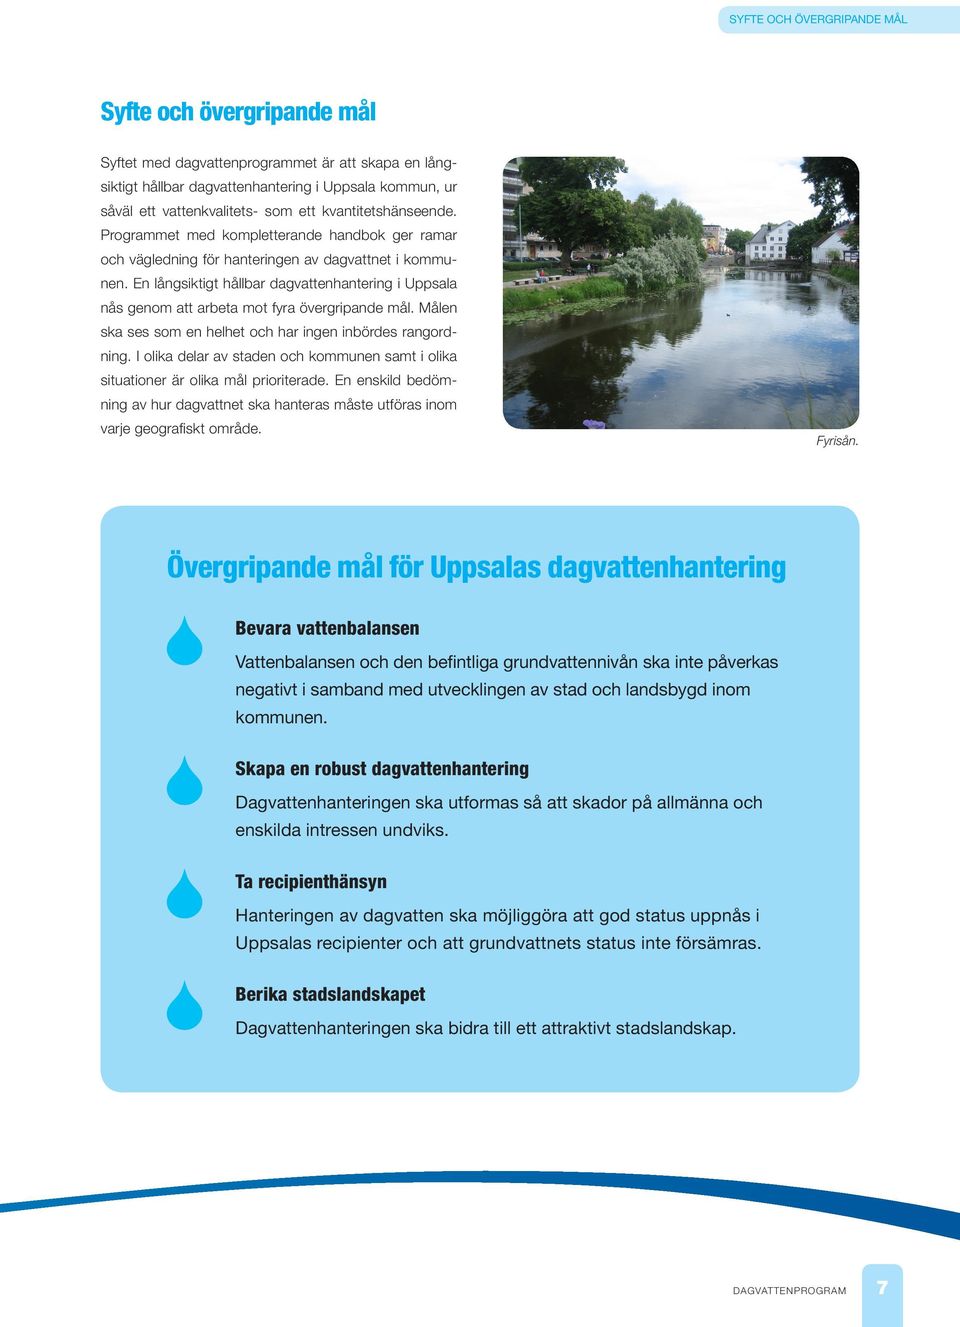 En långsiktigt hållbar dagvattenhantering i Uppsala nås genom att arbeta mot fyra övergripande mål. Målen ska ses som en helhet och har ingen inbördes rangordning.